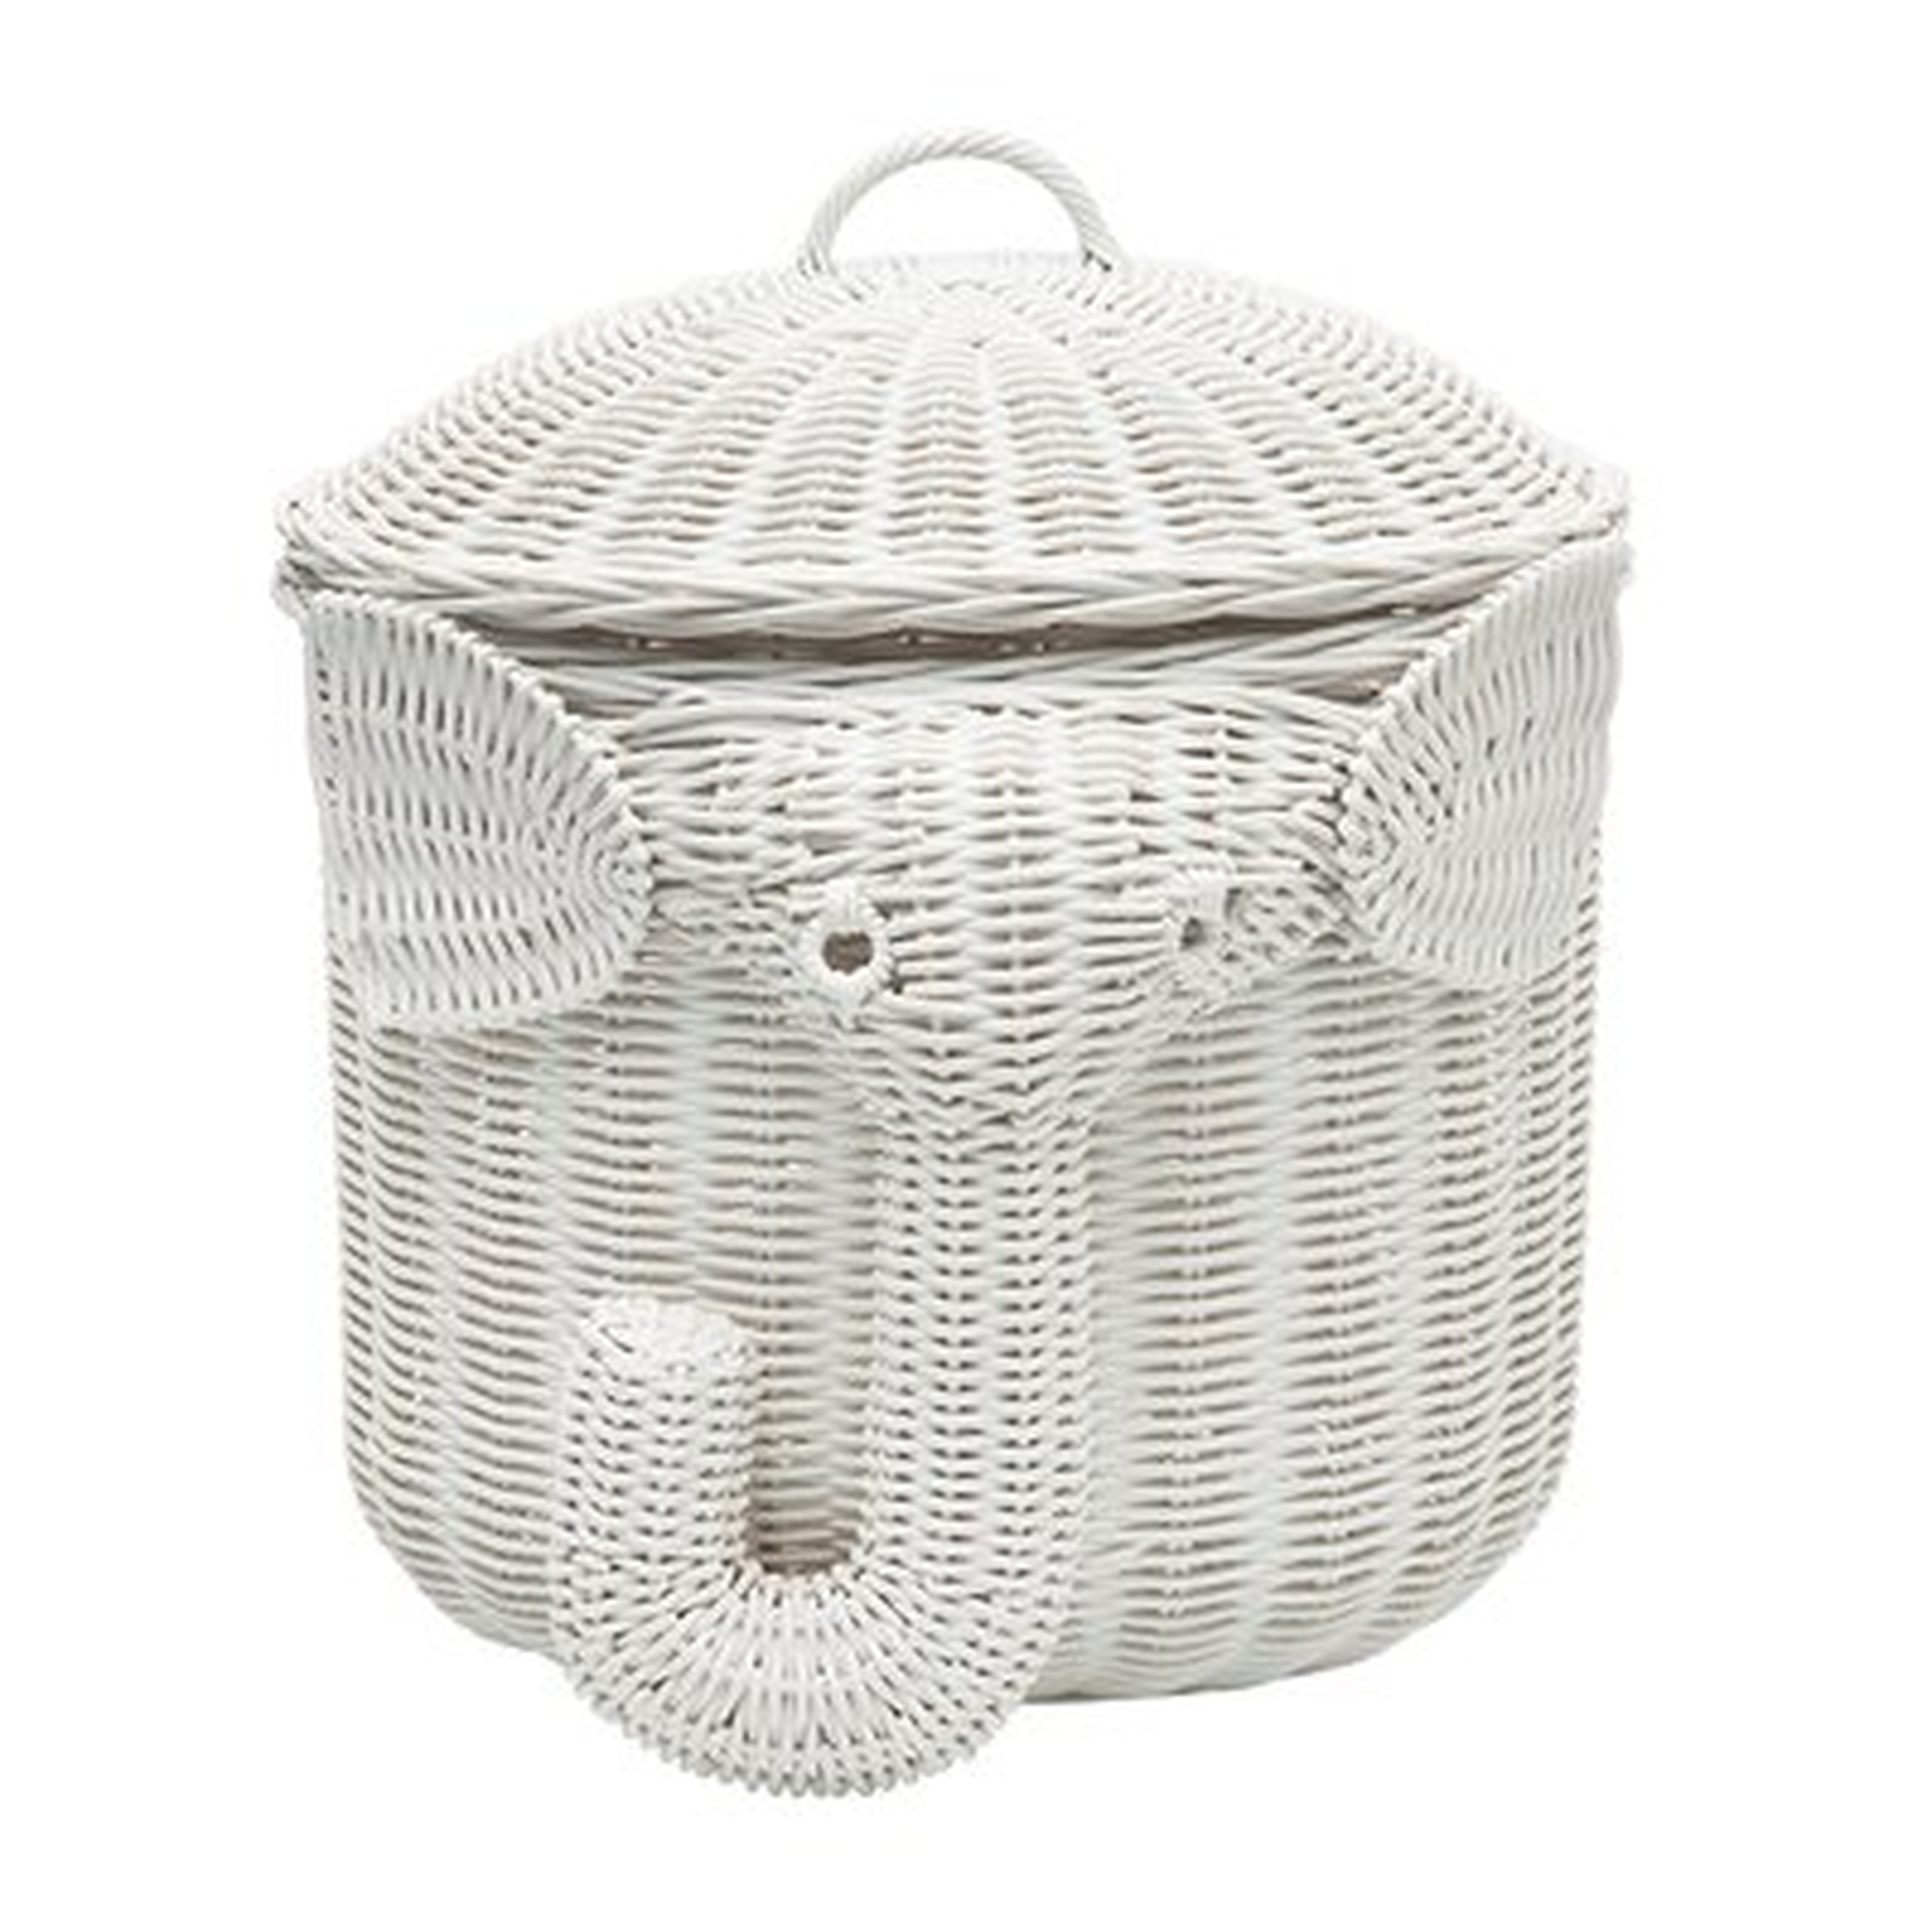 Elephant Wicker Storage Basket - Wayfair